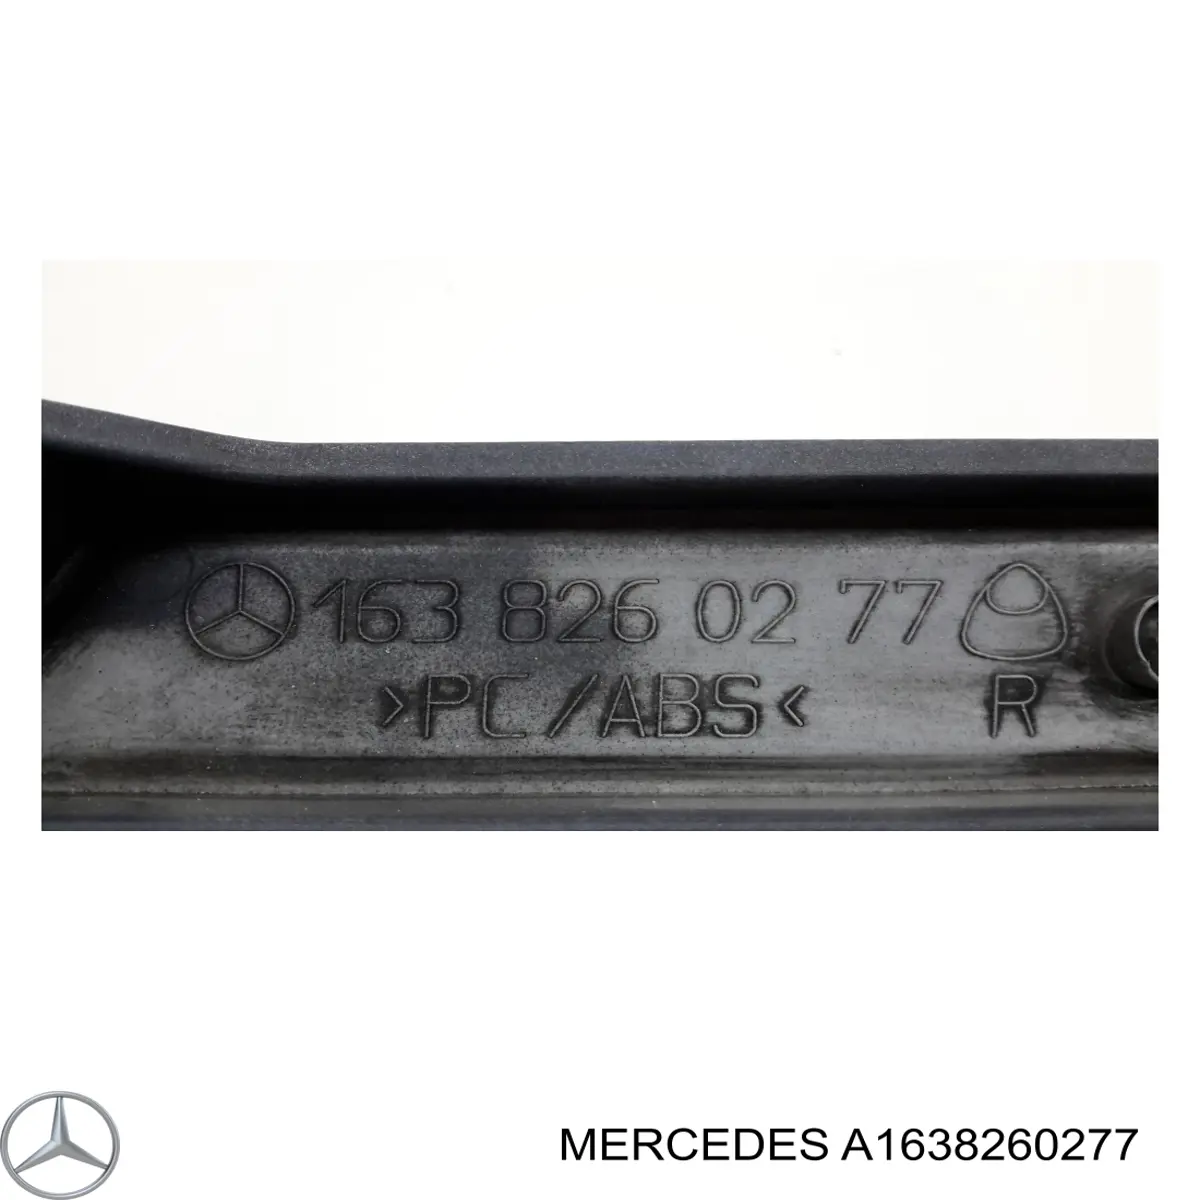 A1638260277 Mercedes listón del faro derecho